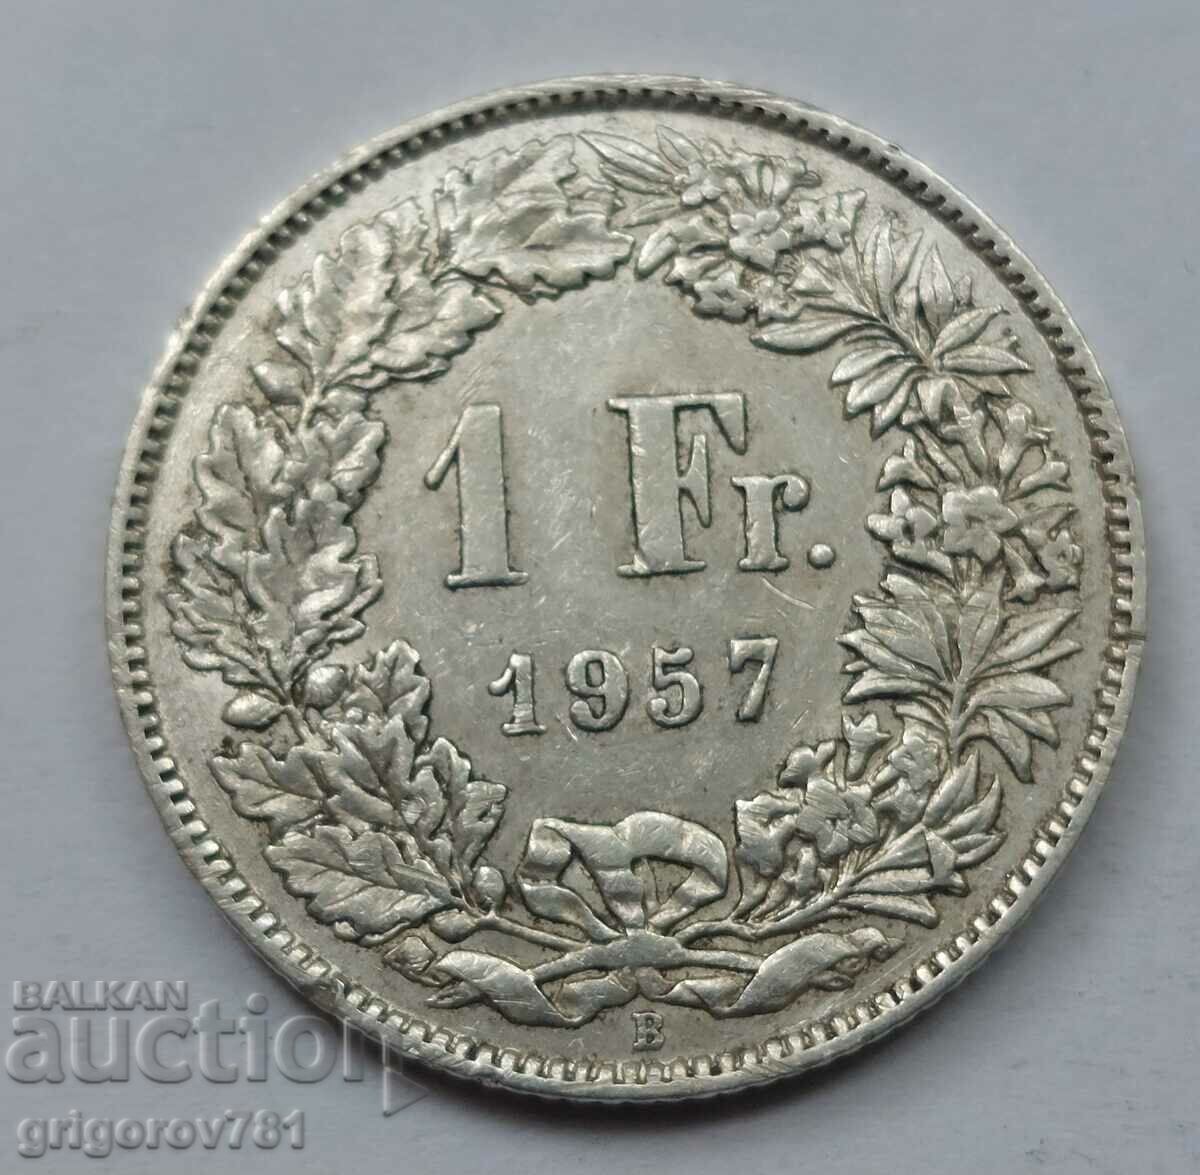 Ασημένιο 1 Φράγκο Ελβετία 1957 B - Ασημένιο νόμισμα #27